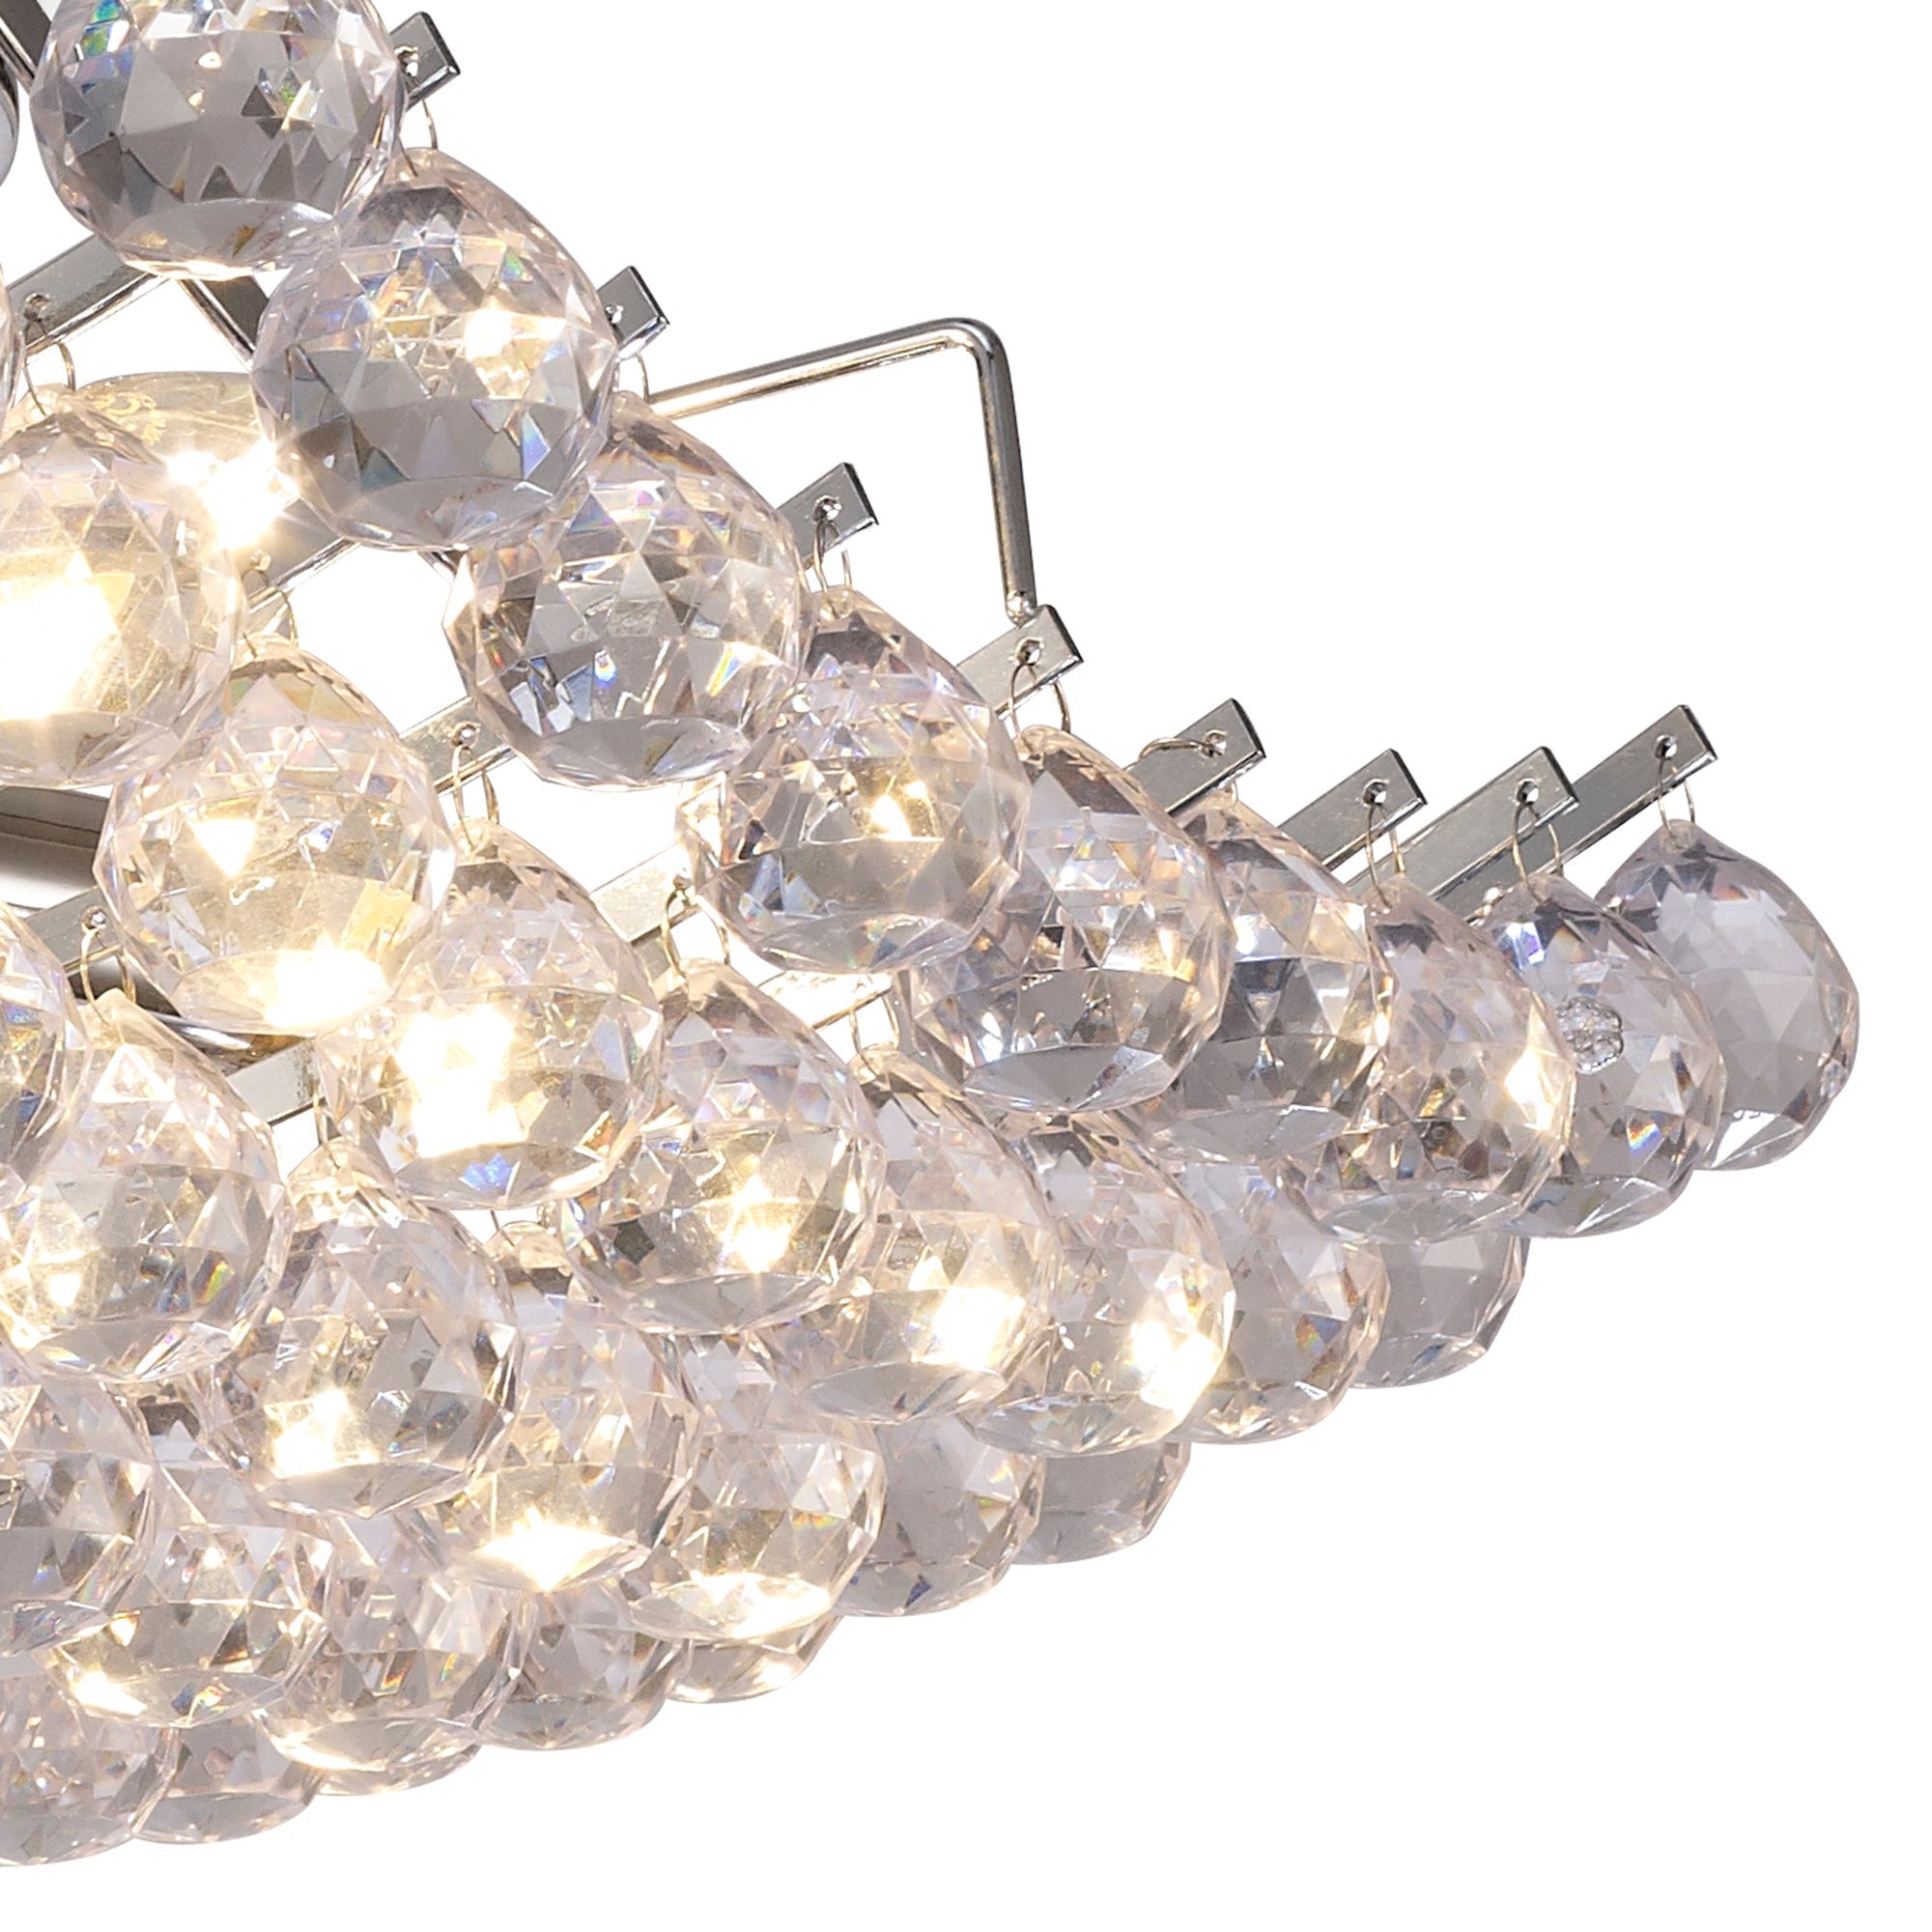 Rayne Flush Ceiling Lamp With Acrylic Spheres, 4 Light E14 Polished Chrome Finish